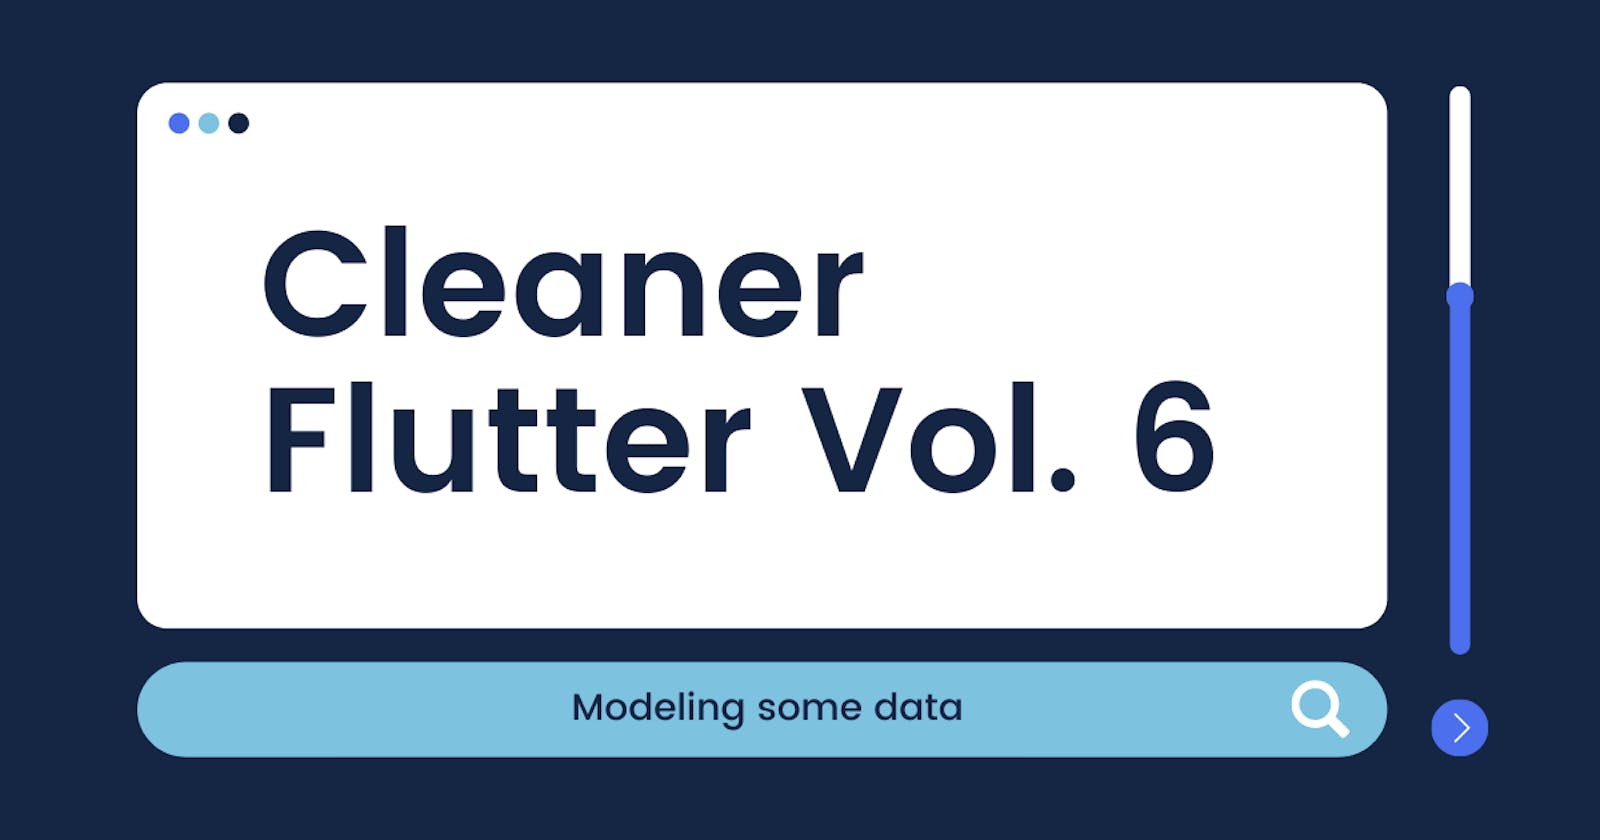 Cleaner Flutter Vol. 6: Modeling some data